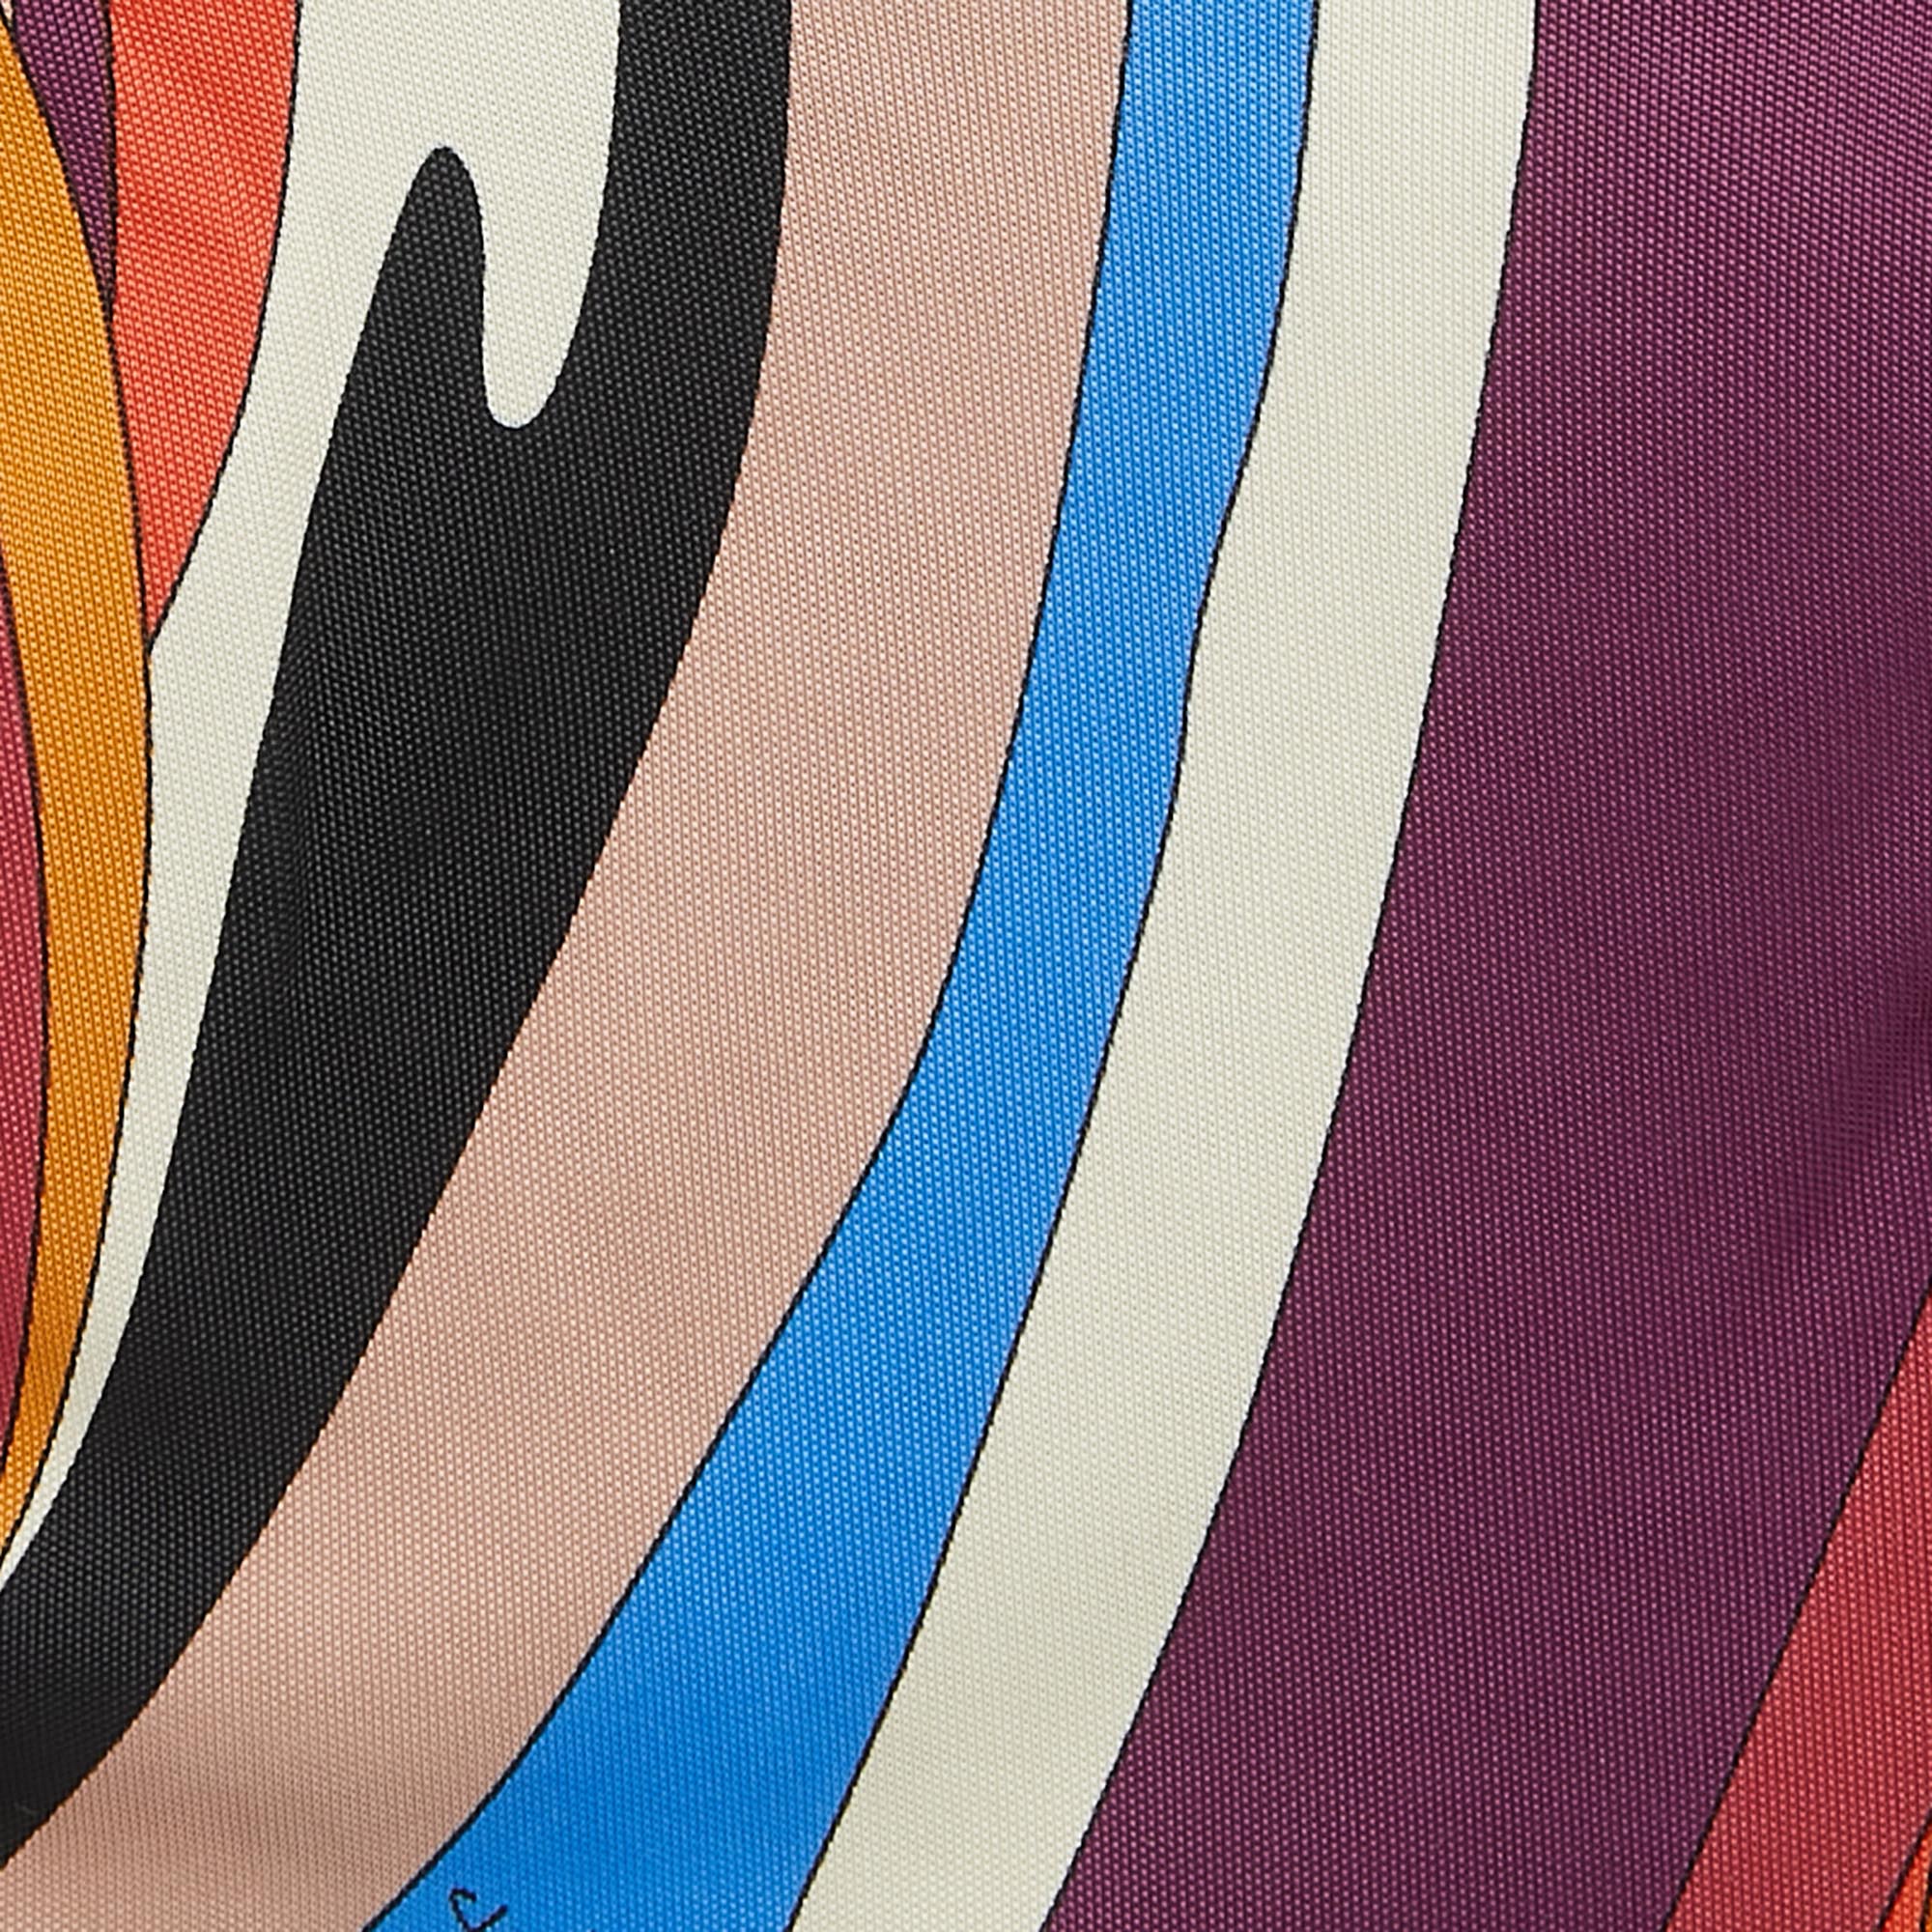 Emilio Pucci Multicolor Printed Jersey Midi Dress S